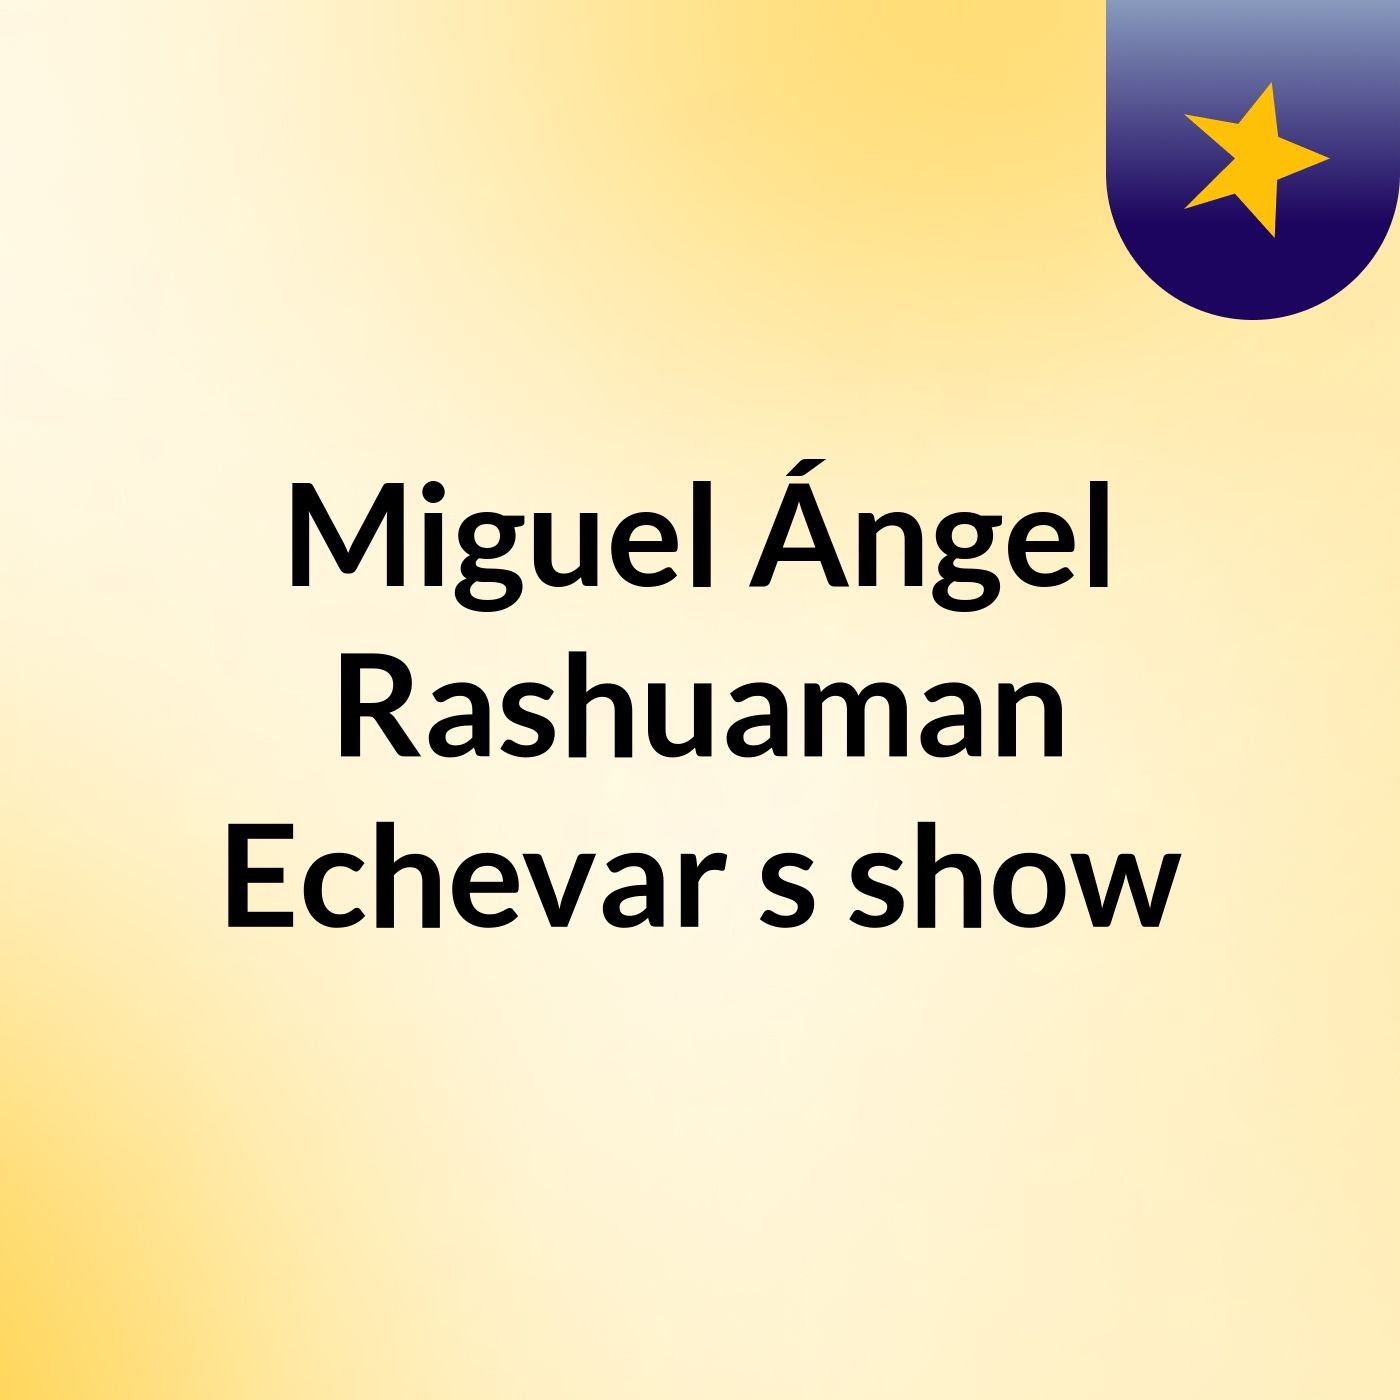 Miguel Ángel Rashuaman Echevar's show